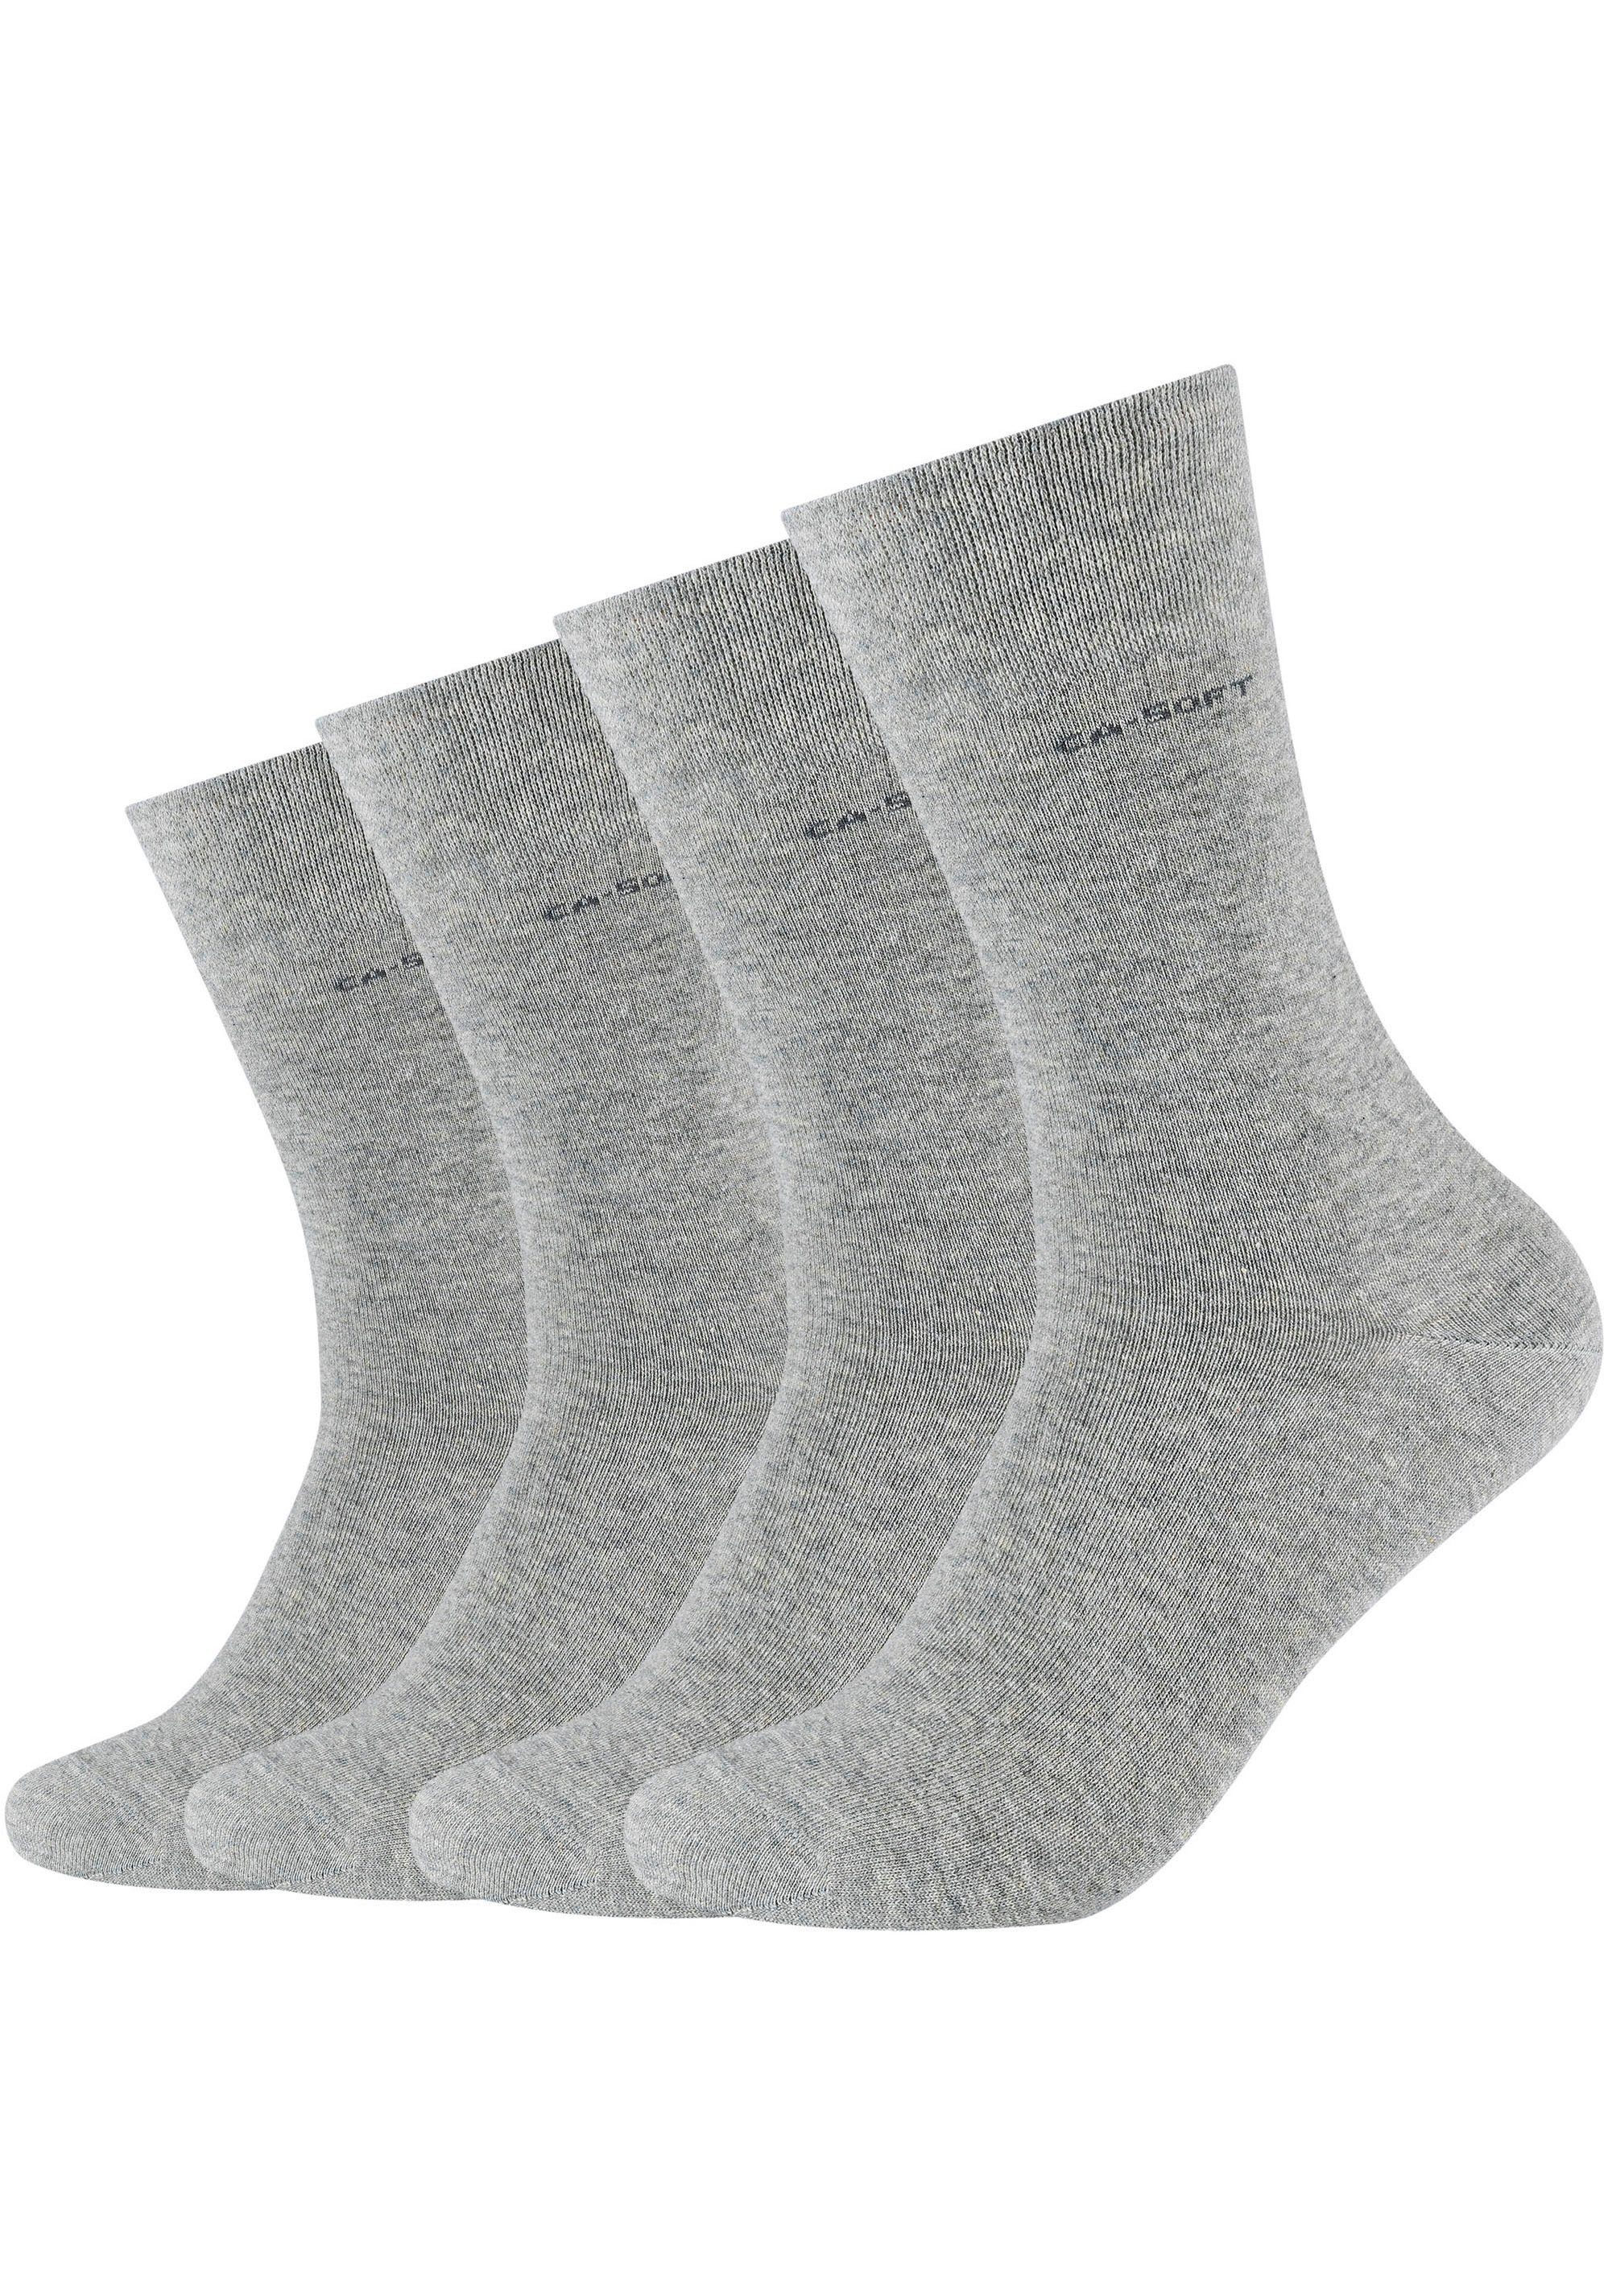 4-Paar) und hellgrau-meliert Socken verstärktem Zehenbereich Fersen- Camano (Packung, Mit